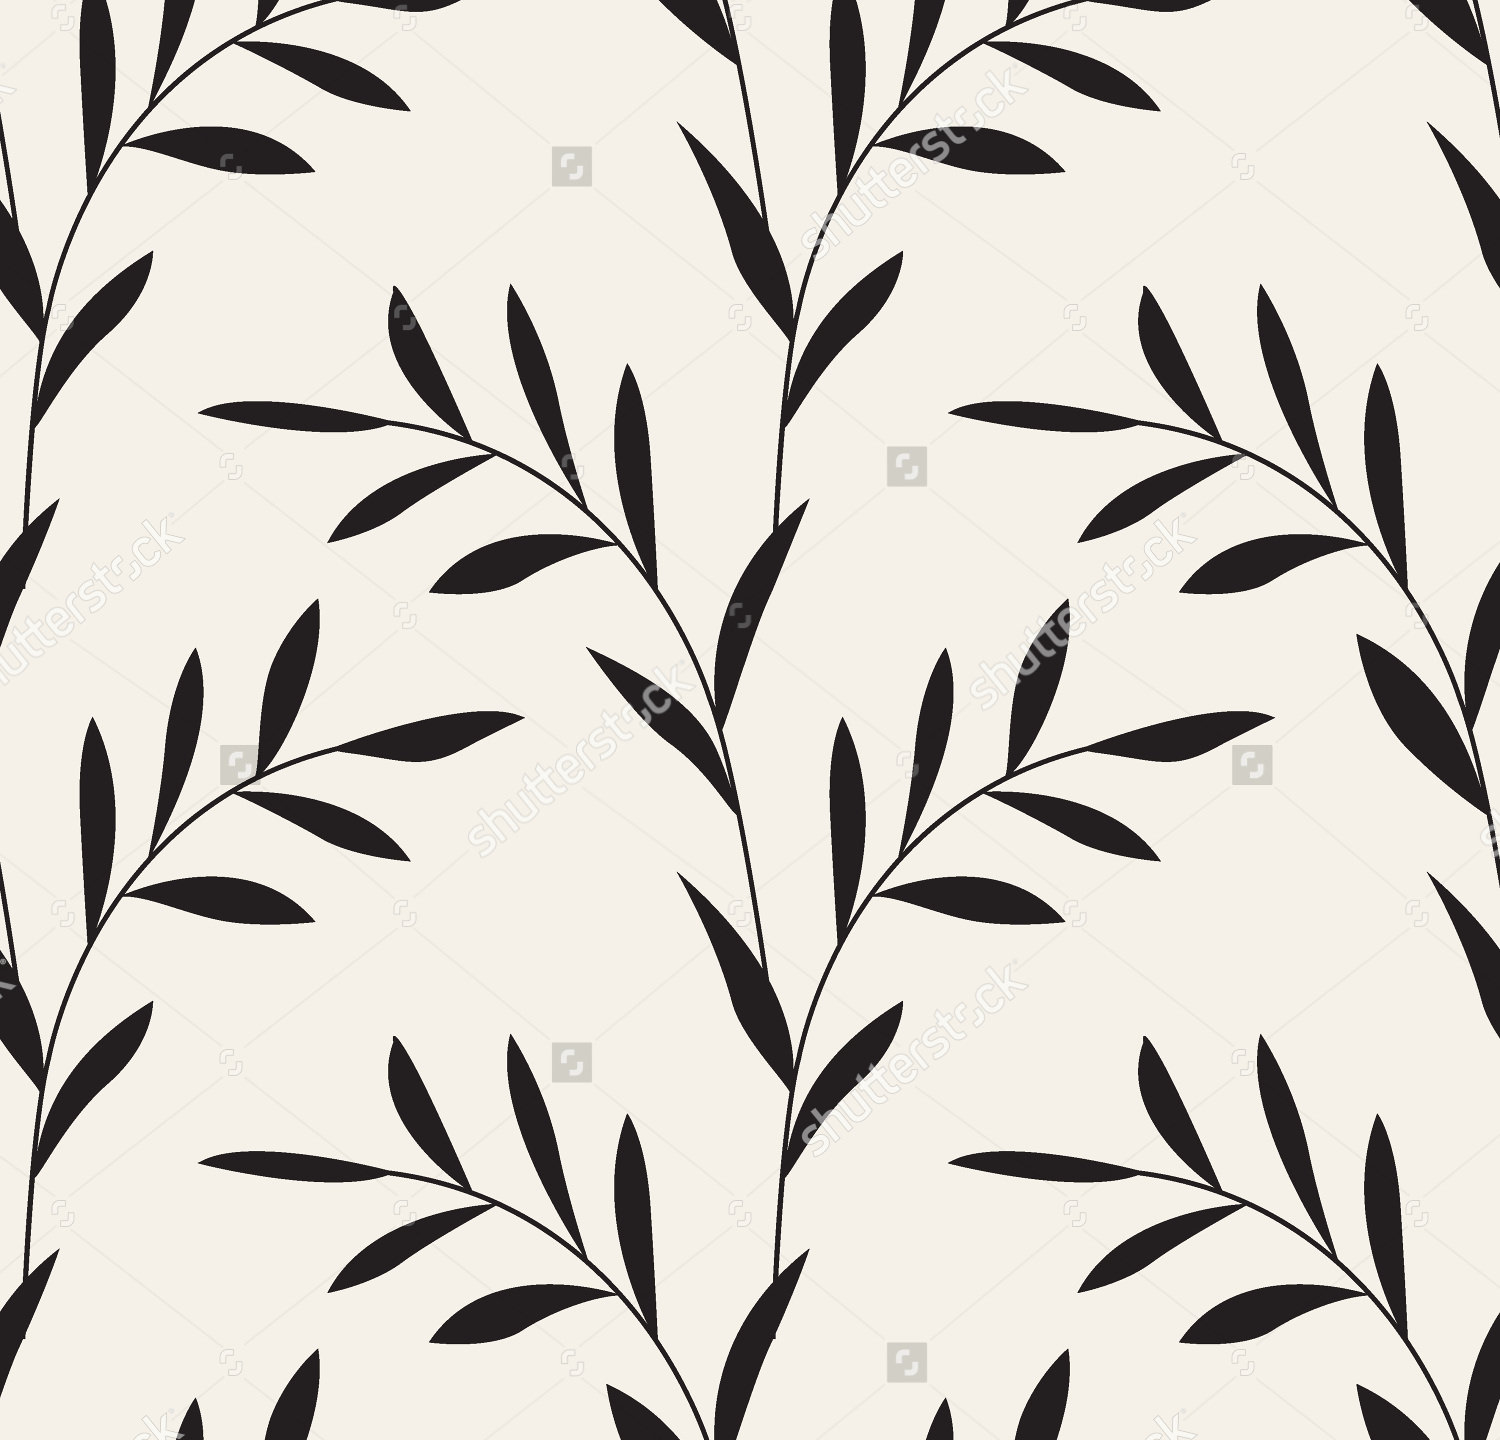 21+ Leaf Design Patterns, Textures, Backgrounds, Images | Design Trends